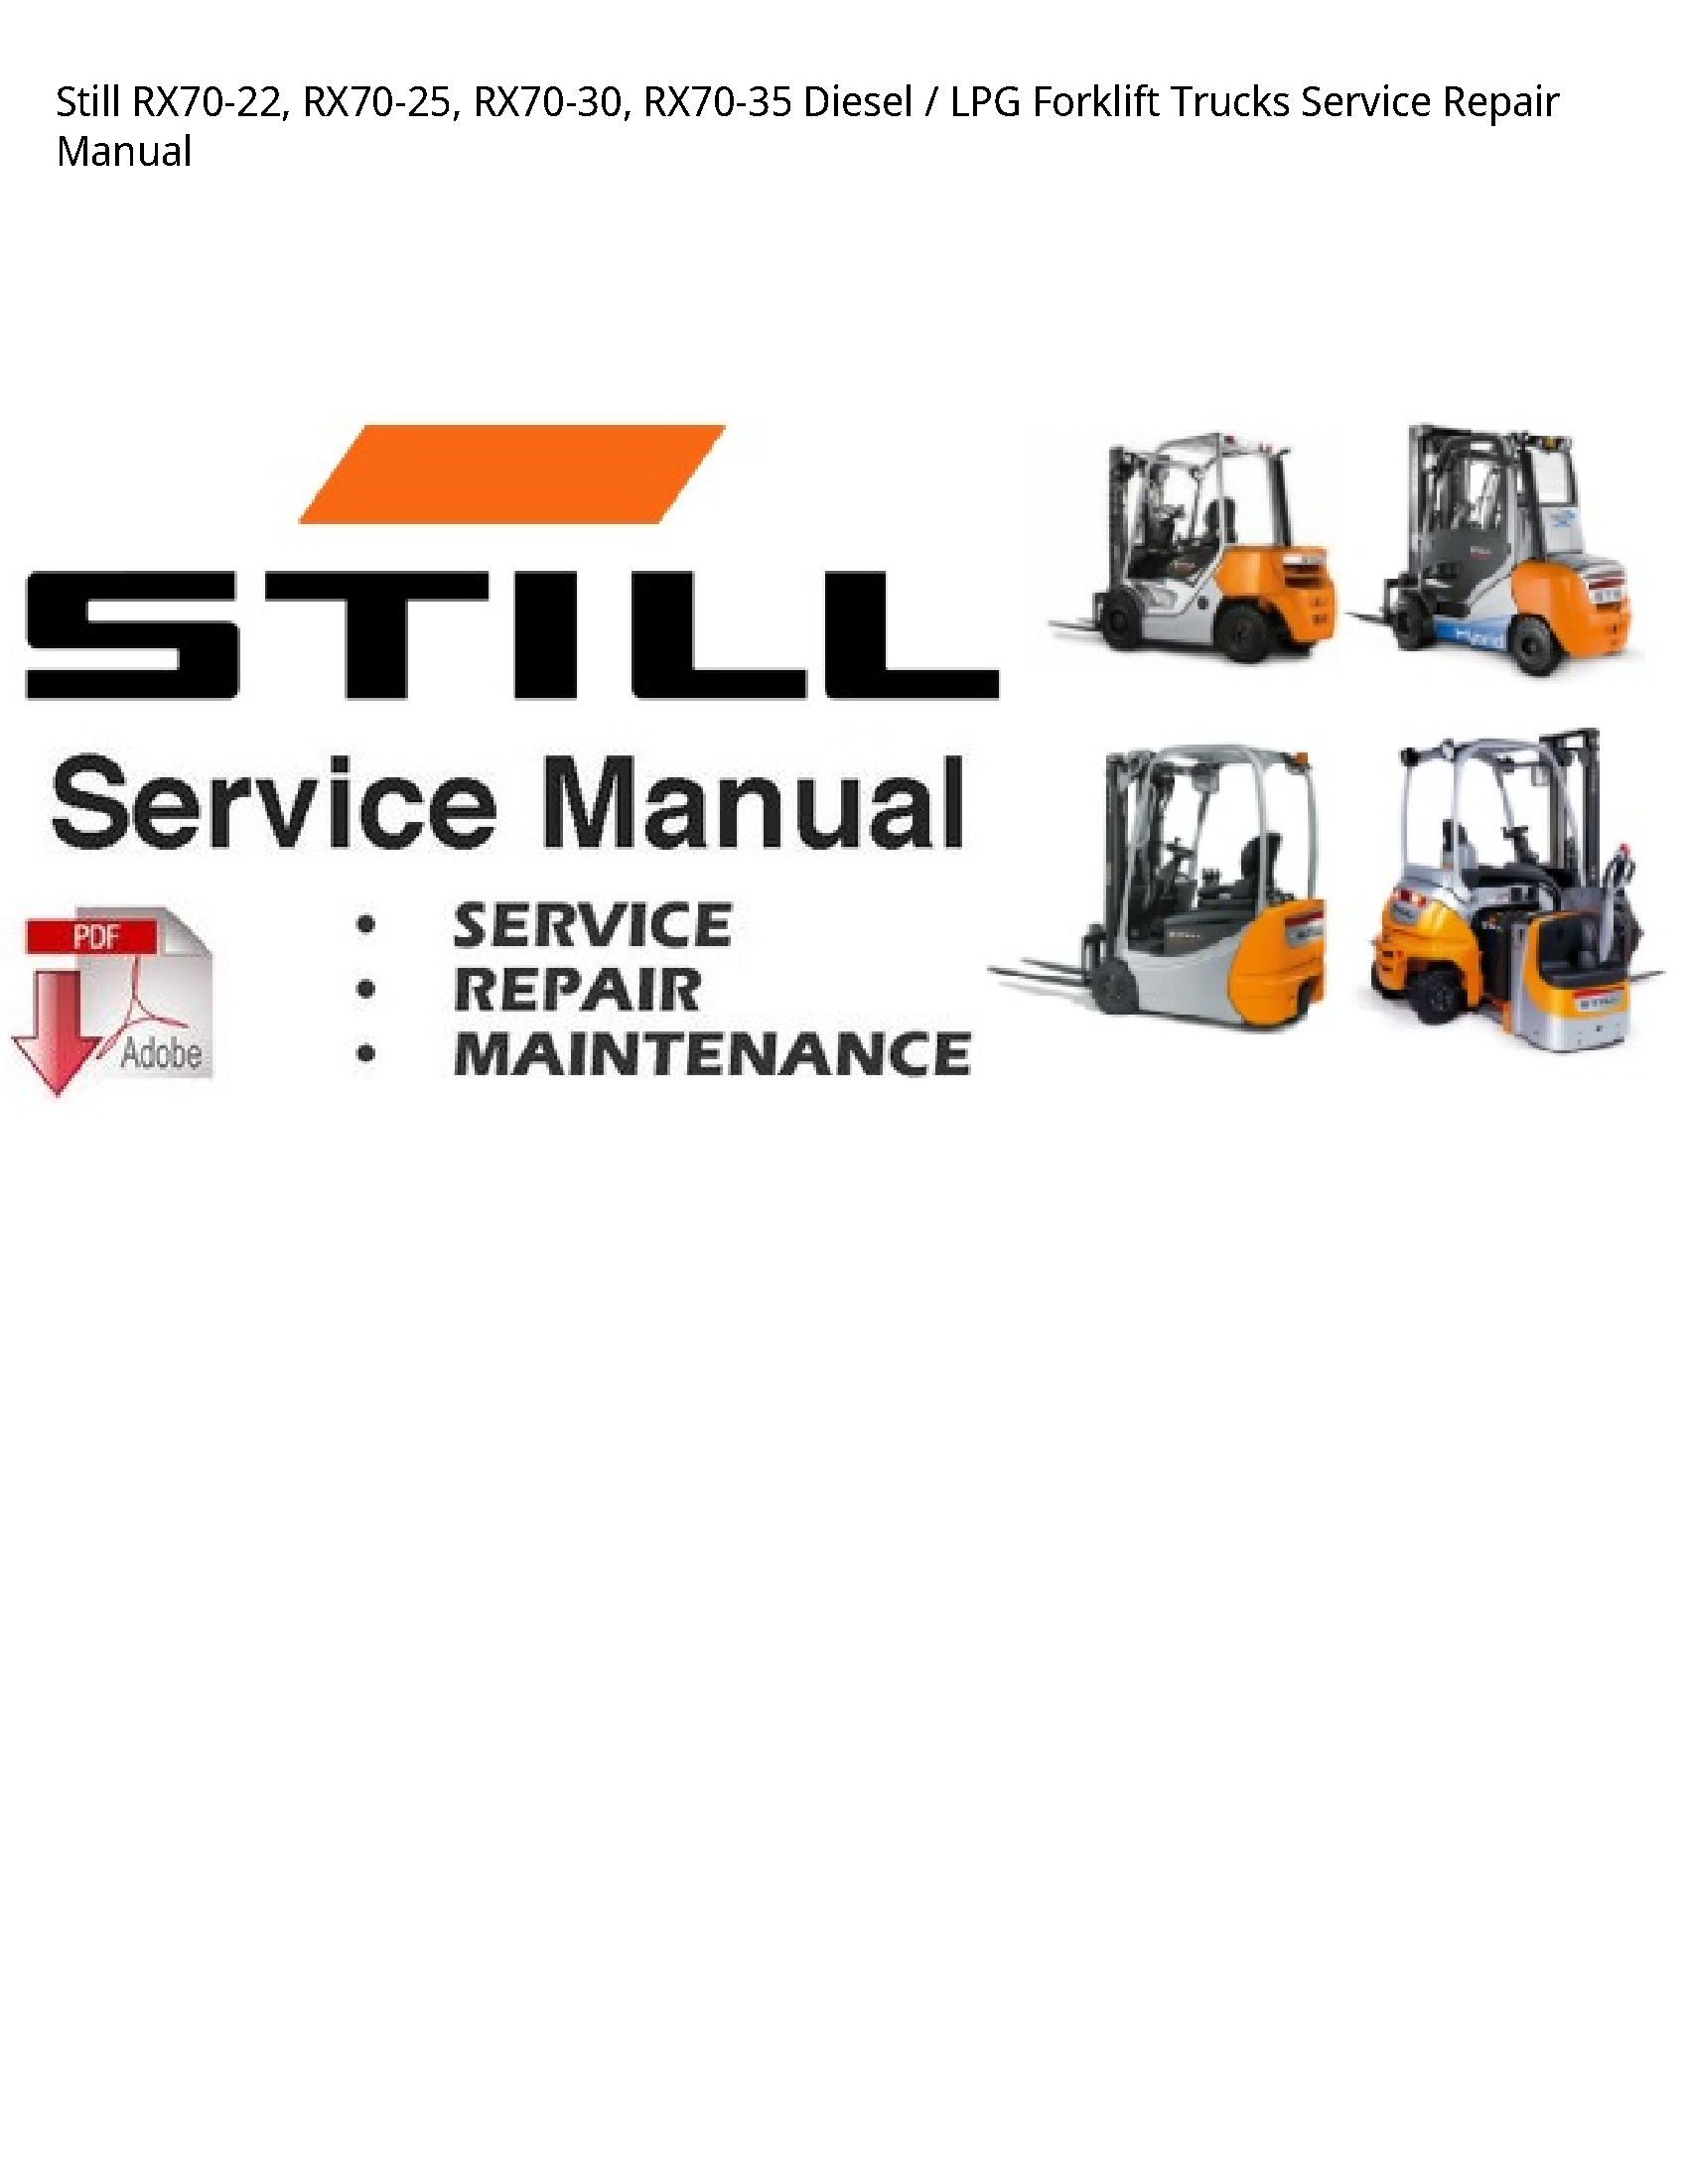 Still RX70-22 Diesel LPG Forklift Trucks manual